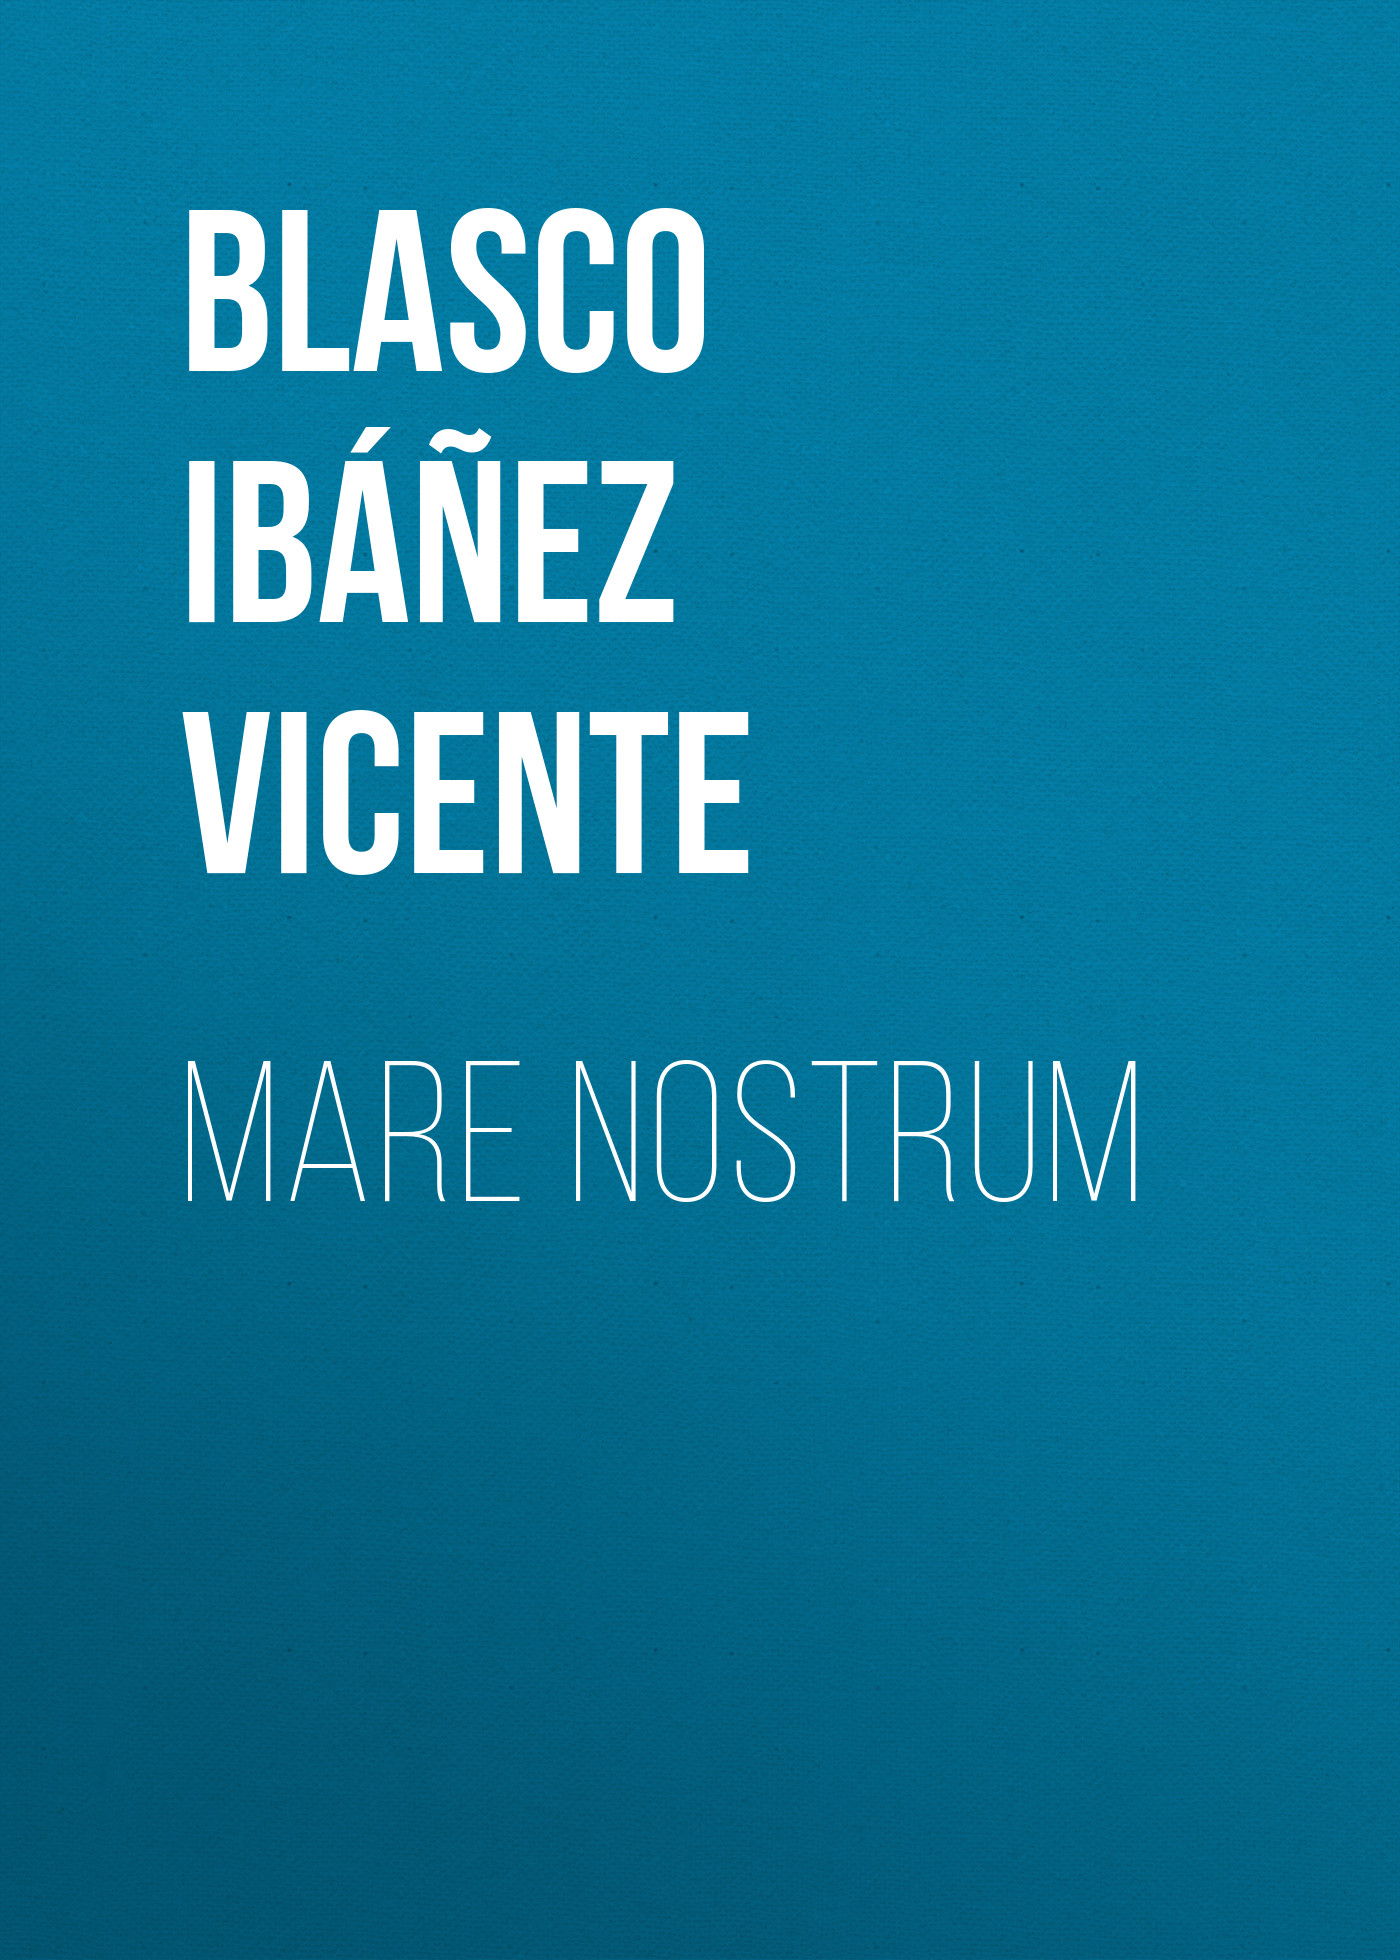 Книга Mare nostrum из серии , созданная Vicente Blasco Ibáñez, может относится к жанру Зарубежная классика, Зарубежная старинная литература. Стоимость электронной книги Mare nostrum с идентификатором 36365358 составляет 0 руб.